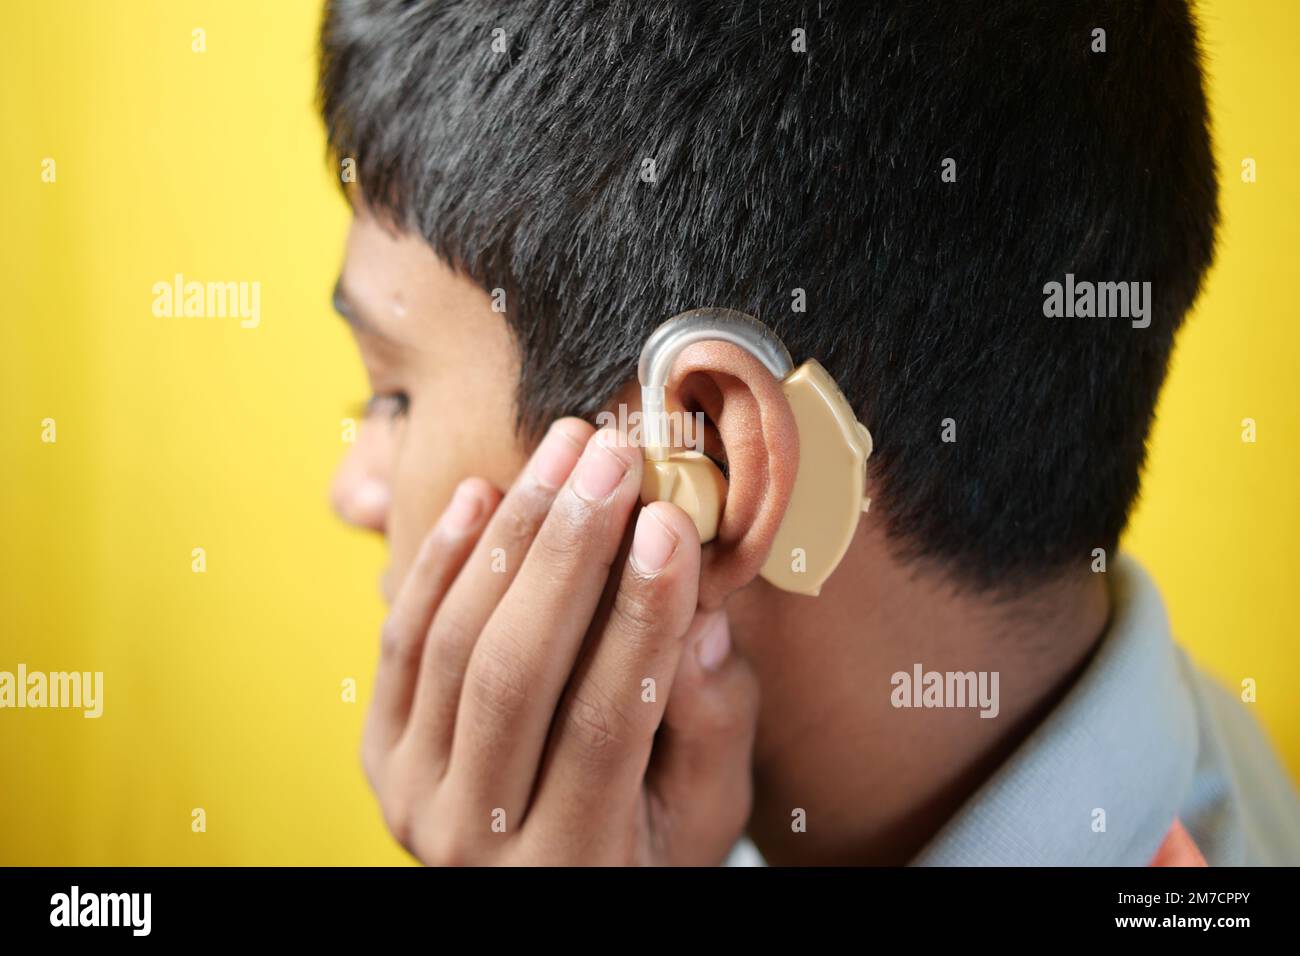 Hörgerätekonzept, Teenager mit Hörproblemen. Stockfoto